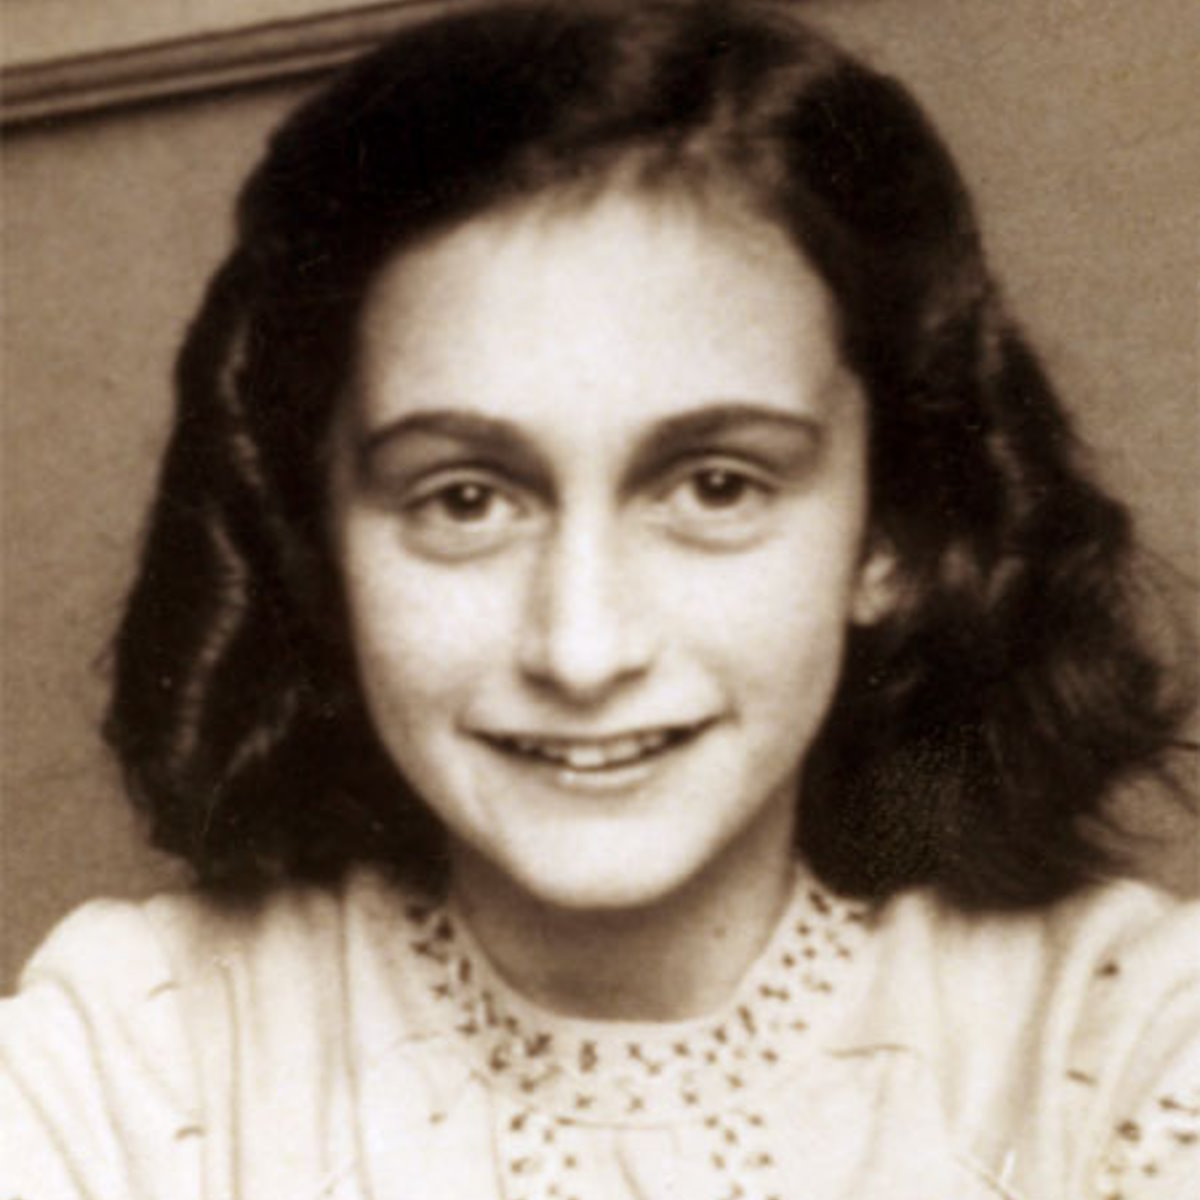 Giornata della memoria, “Incontrare Anne Frank oggi” è il tema del confronto che il giornalista Davide Romano avrà con gli alunni dell’istituto Marcellino Corradini di Palermo